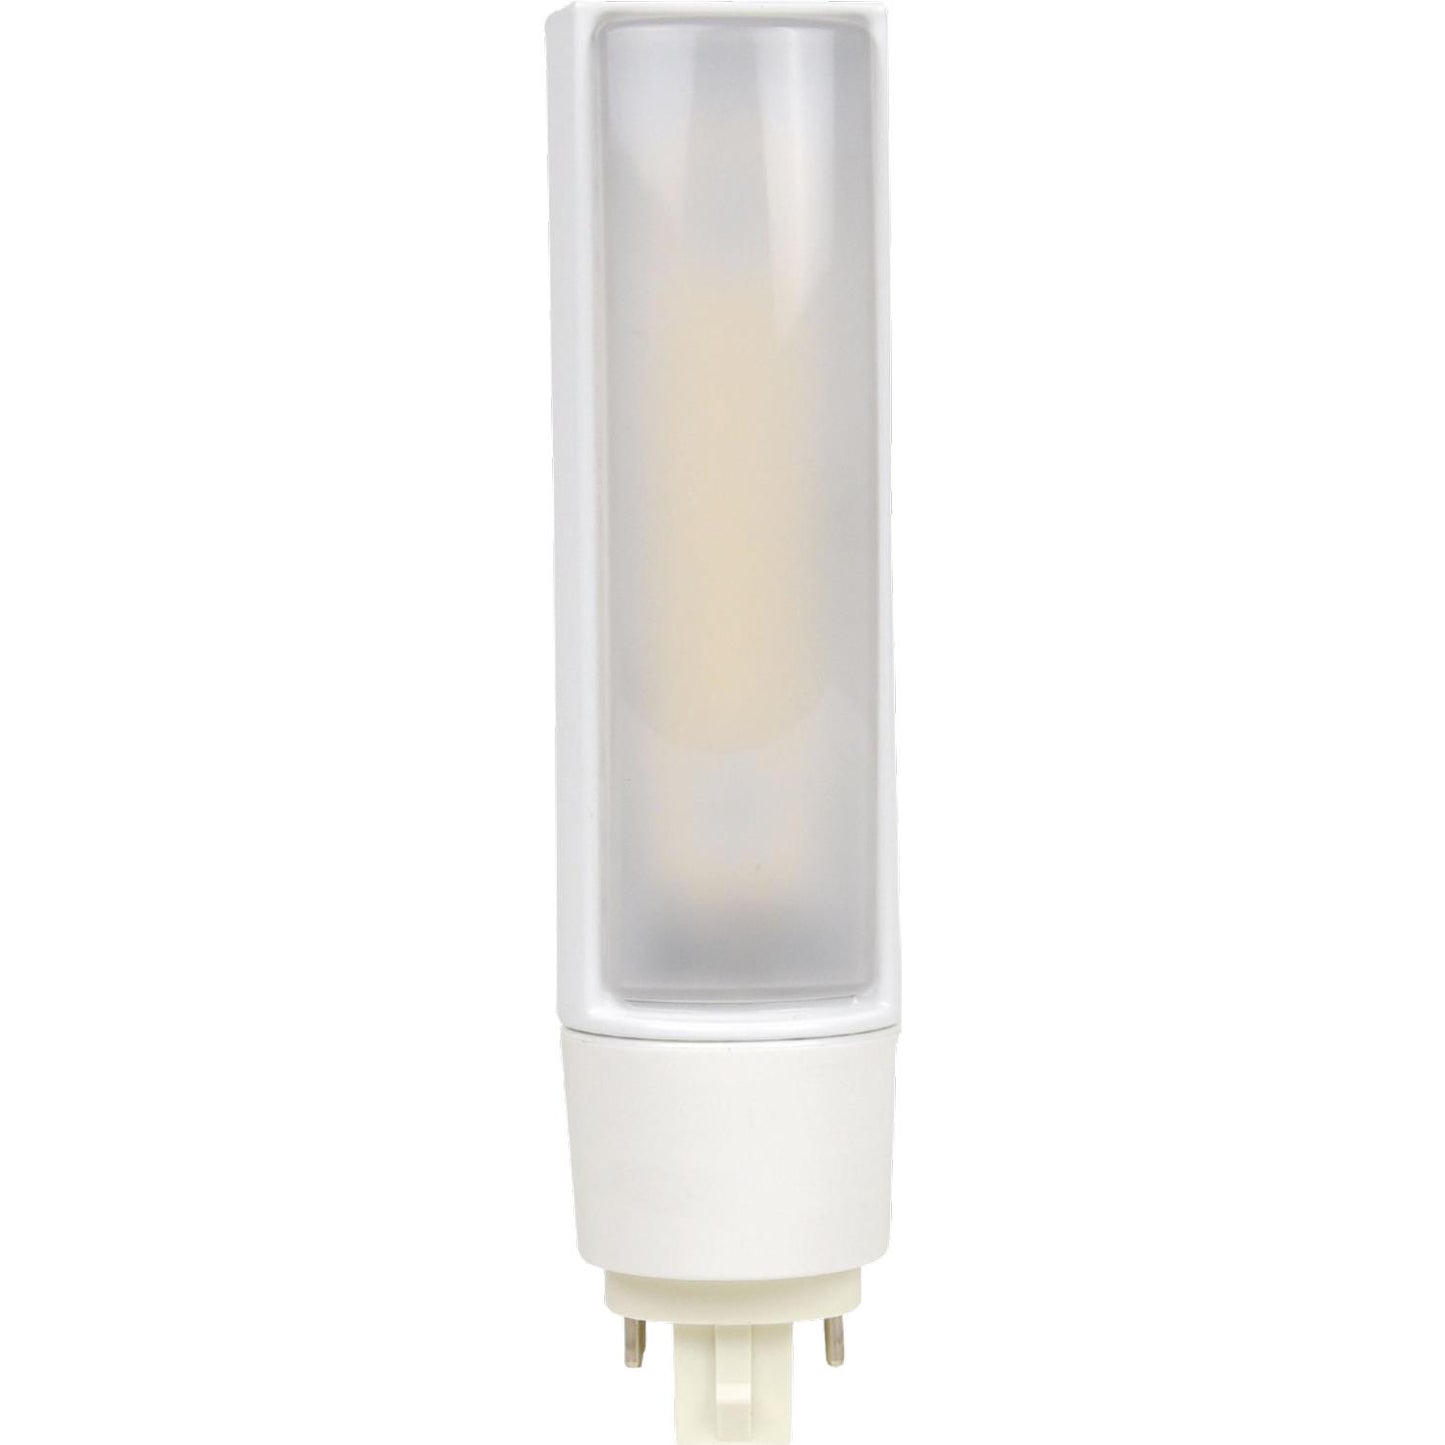 Sunlite 16 Watt PLD Lamp Super White